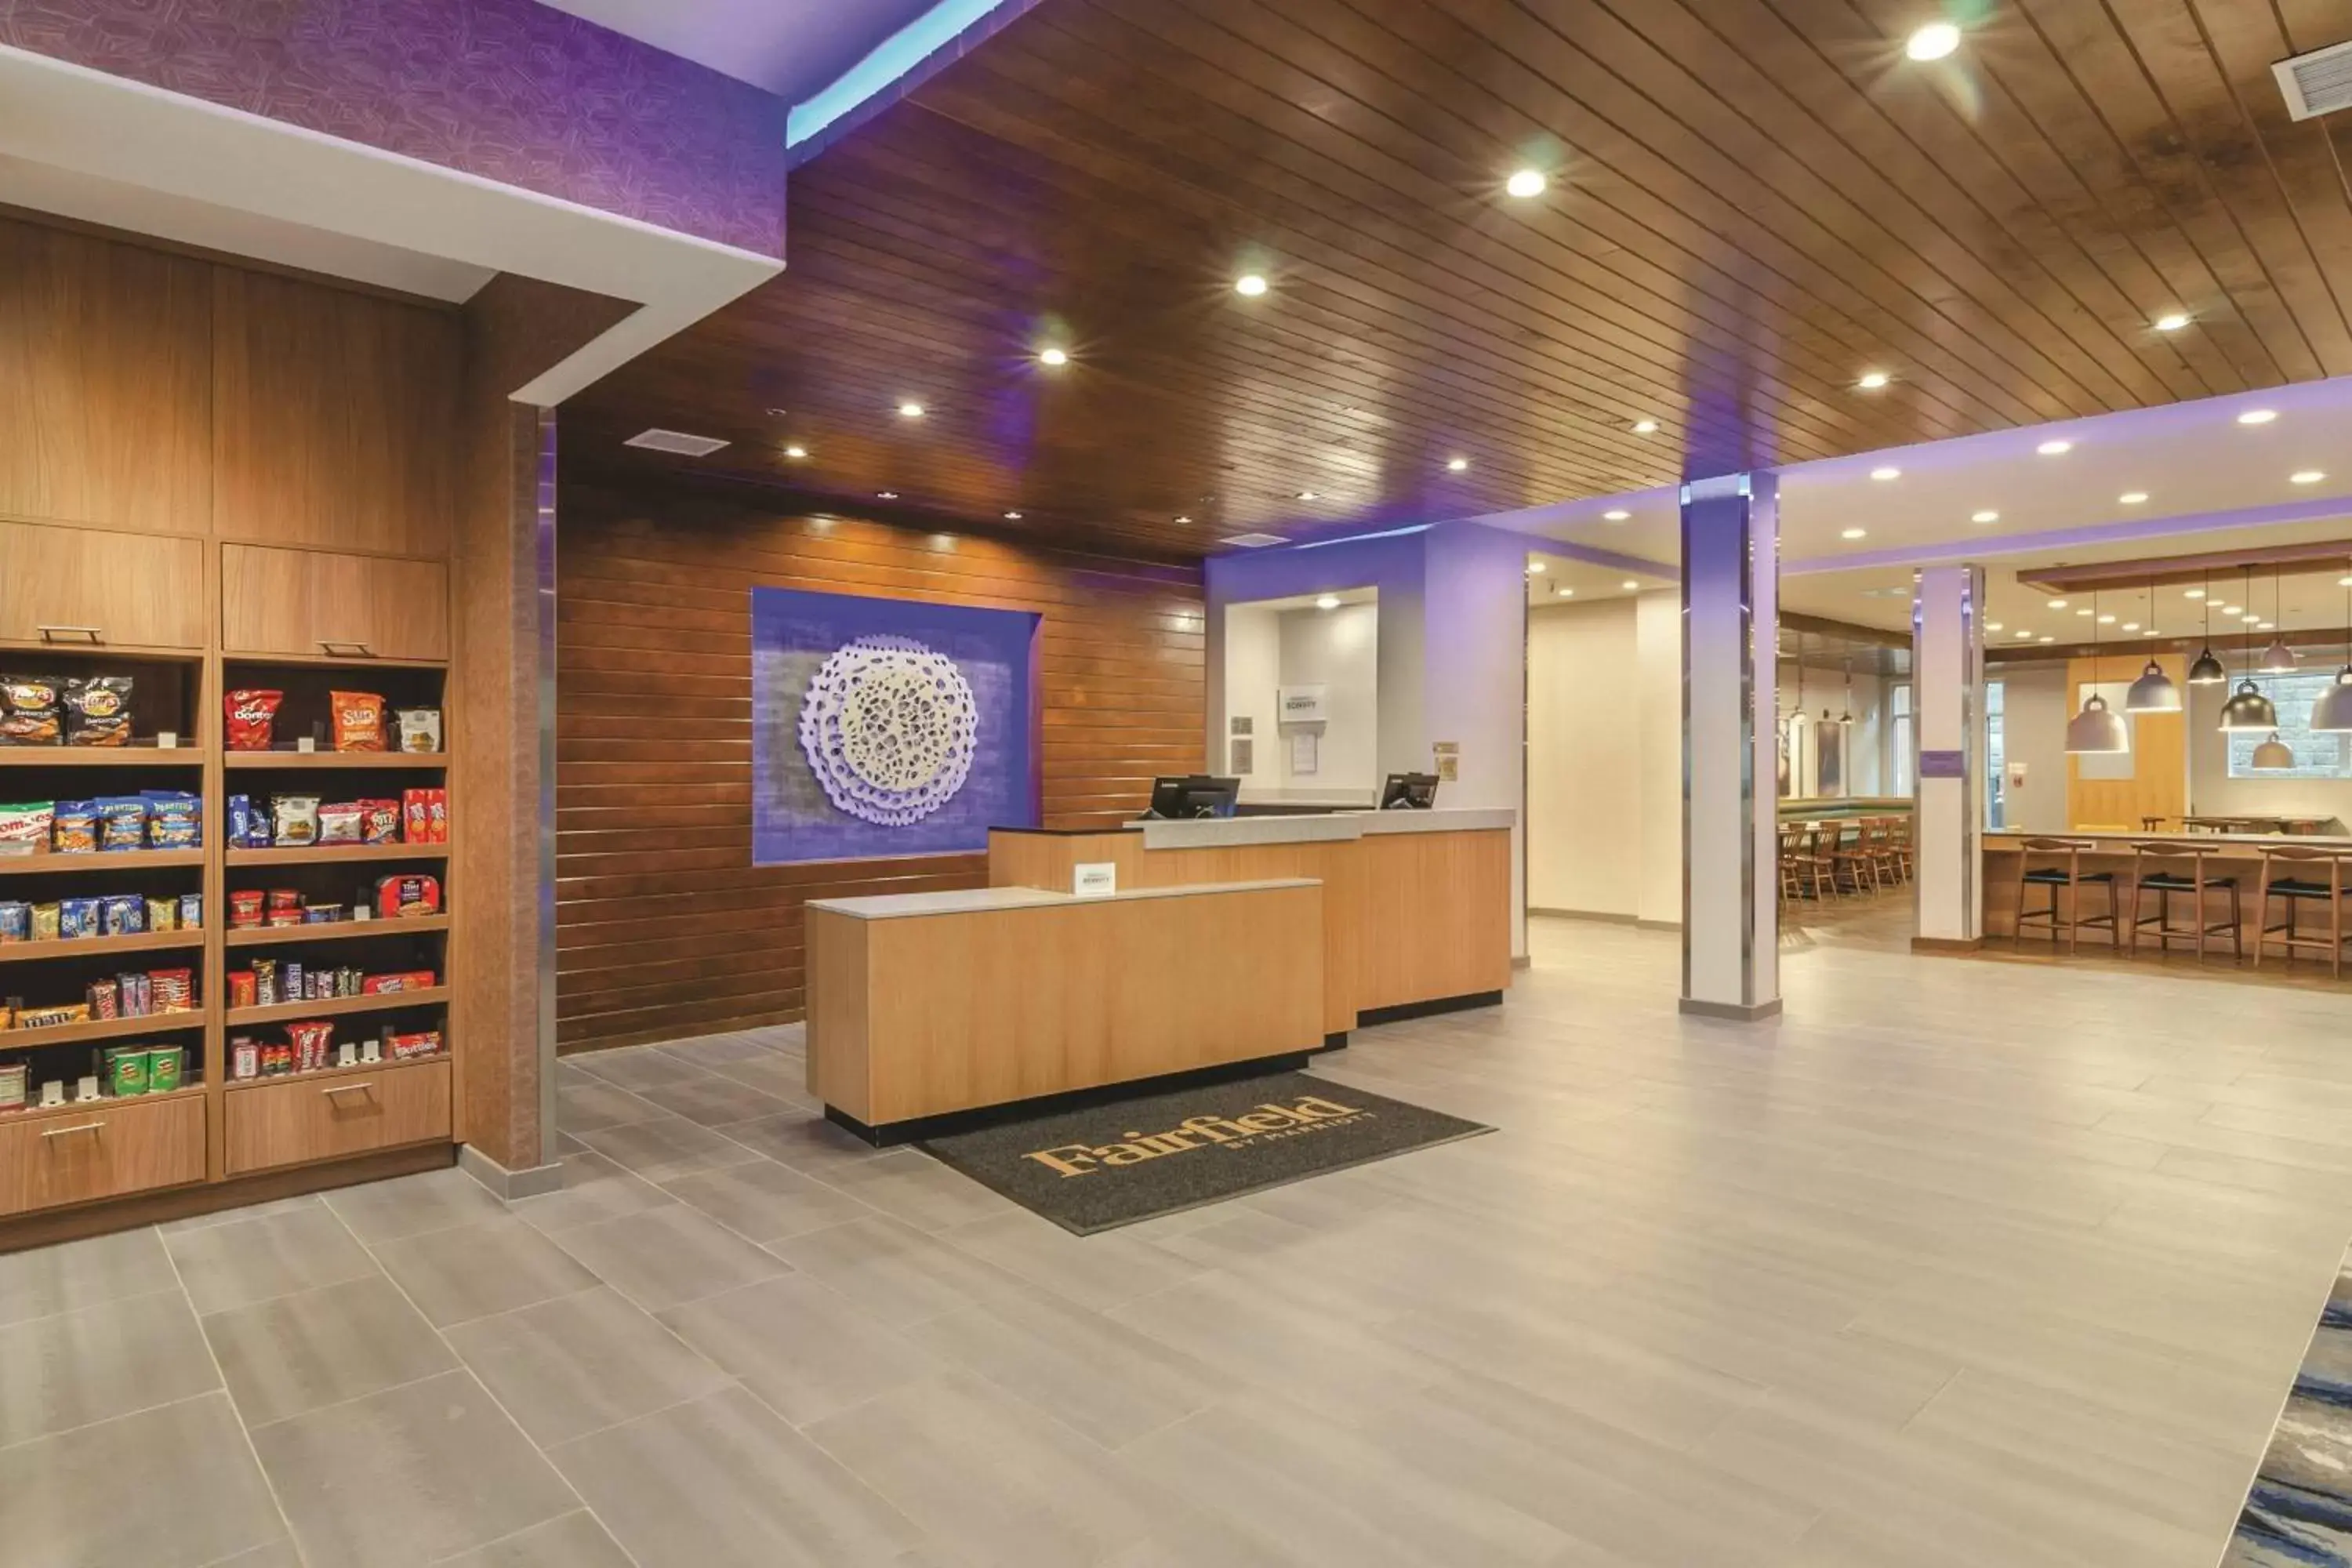 Lobby or reception, Lobby/Reception in Fairfield Inn & Suites by Marriott Kansas City Shawnee